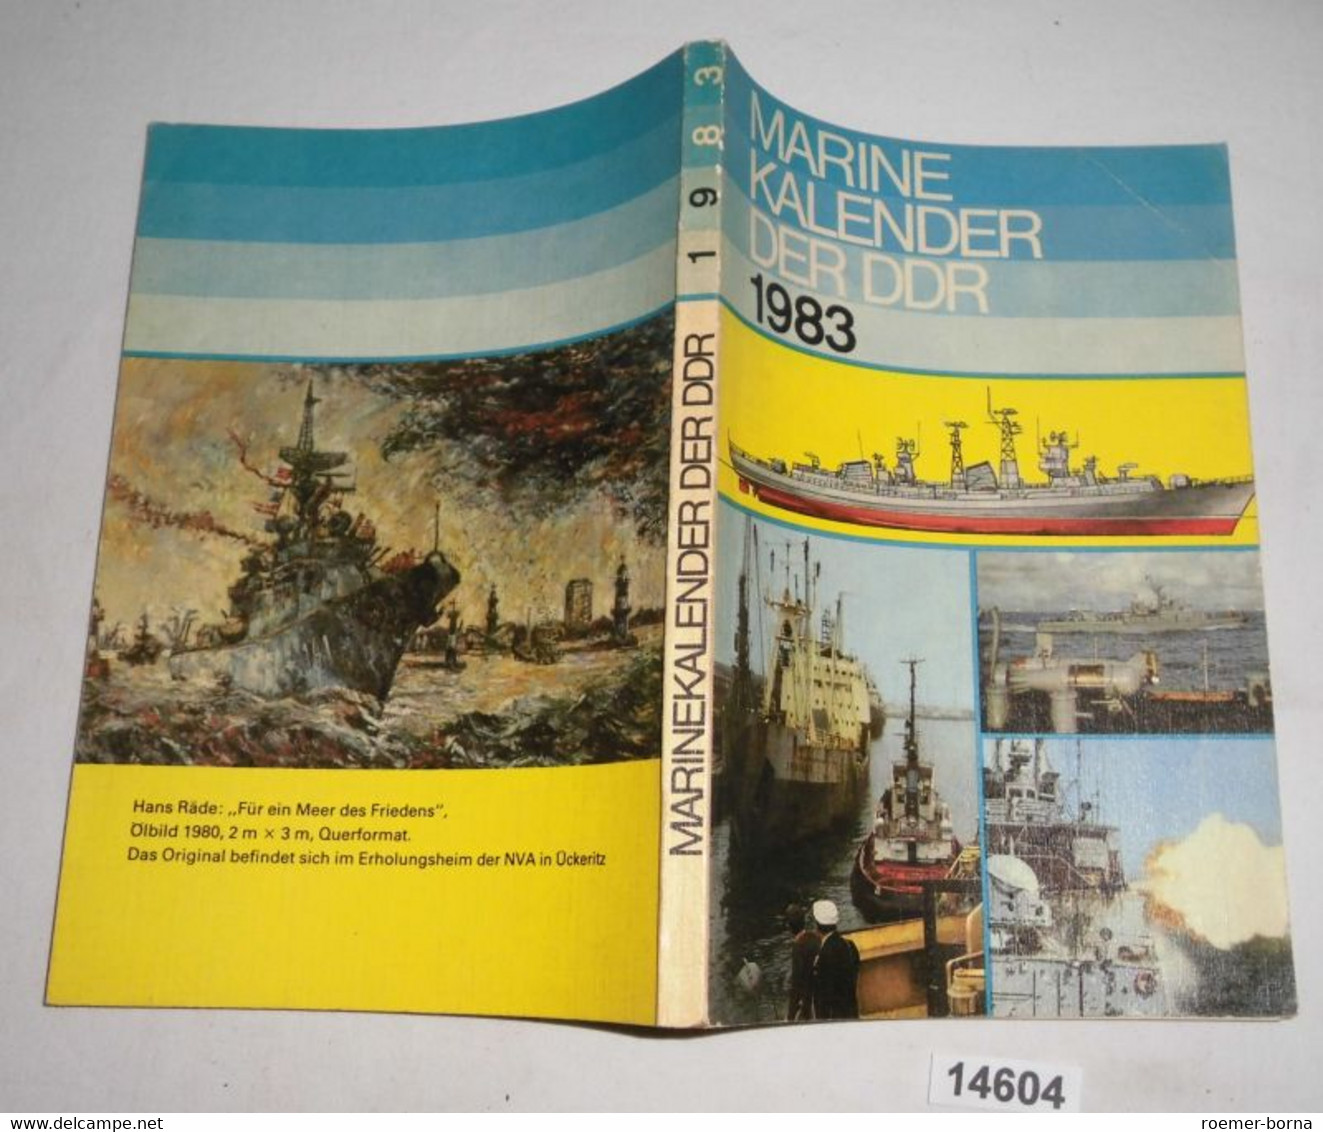 Marinekalender Marine Kalender Der DDR 1983 - Kalender